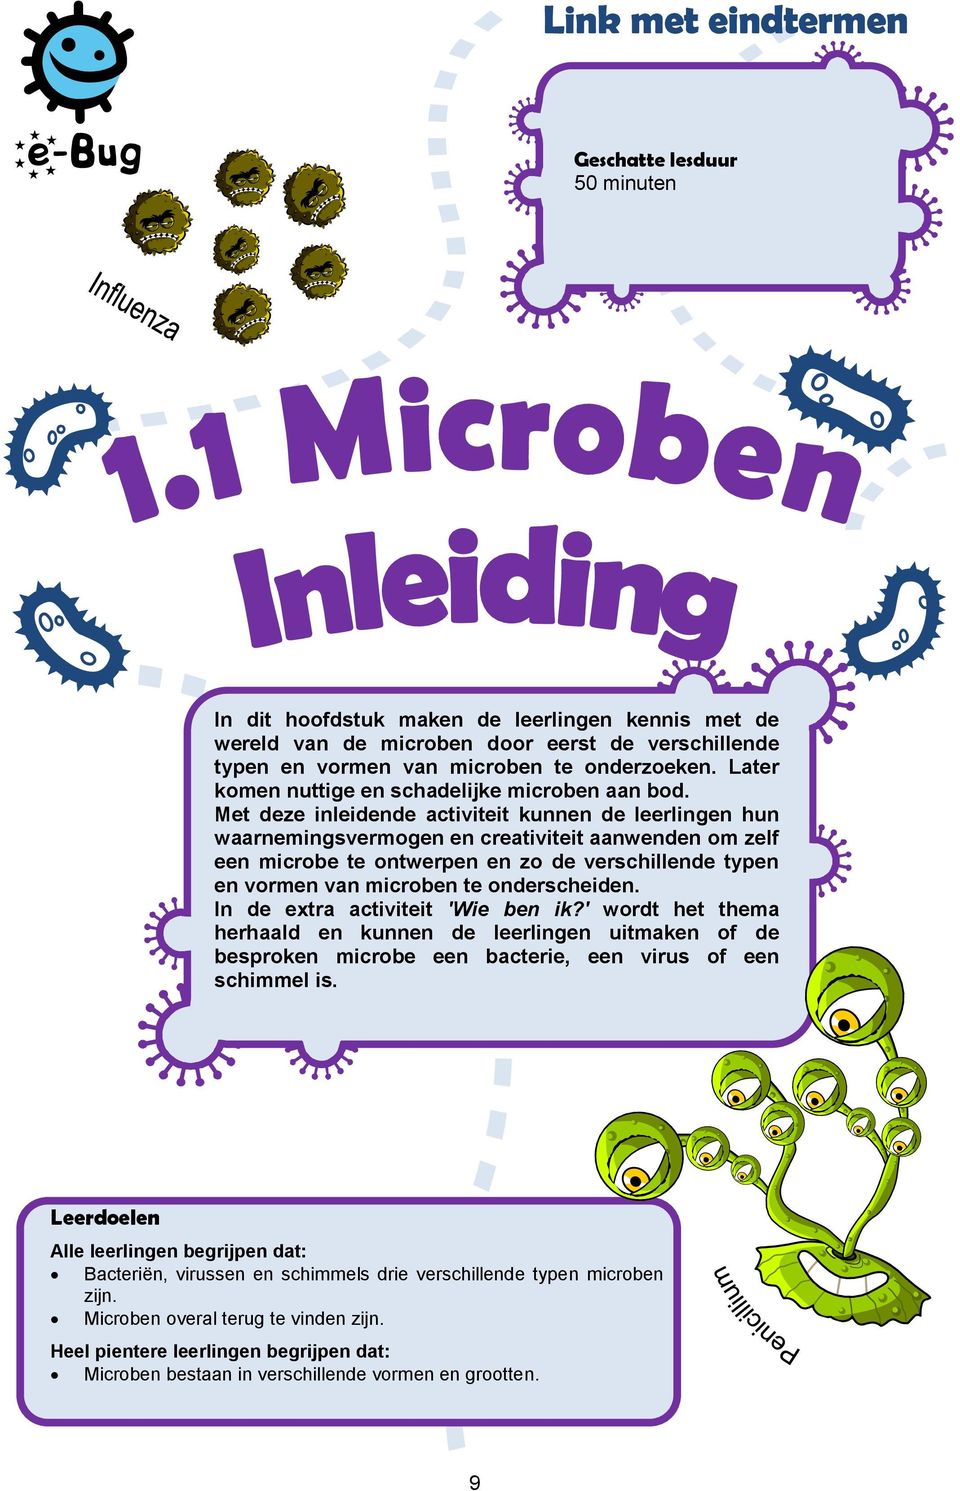 Met deze inleidende activiteit kunnen de leerlingen hun waarnemingsvermogen en creativiteit aanwenden om zelf een microbe te ontwerpen en zo de verschillende typen en vormen van microben te